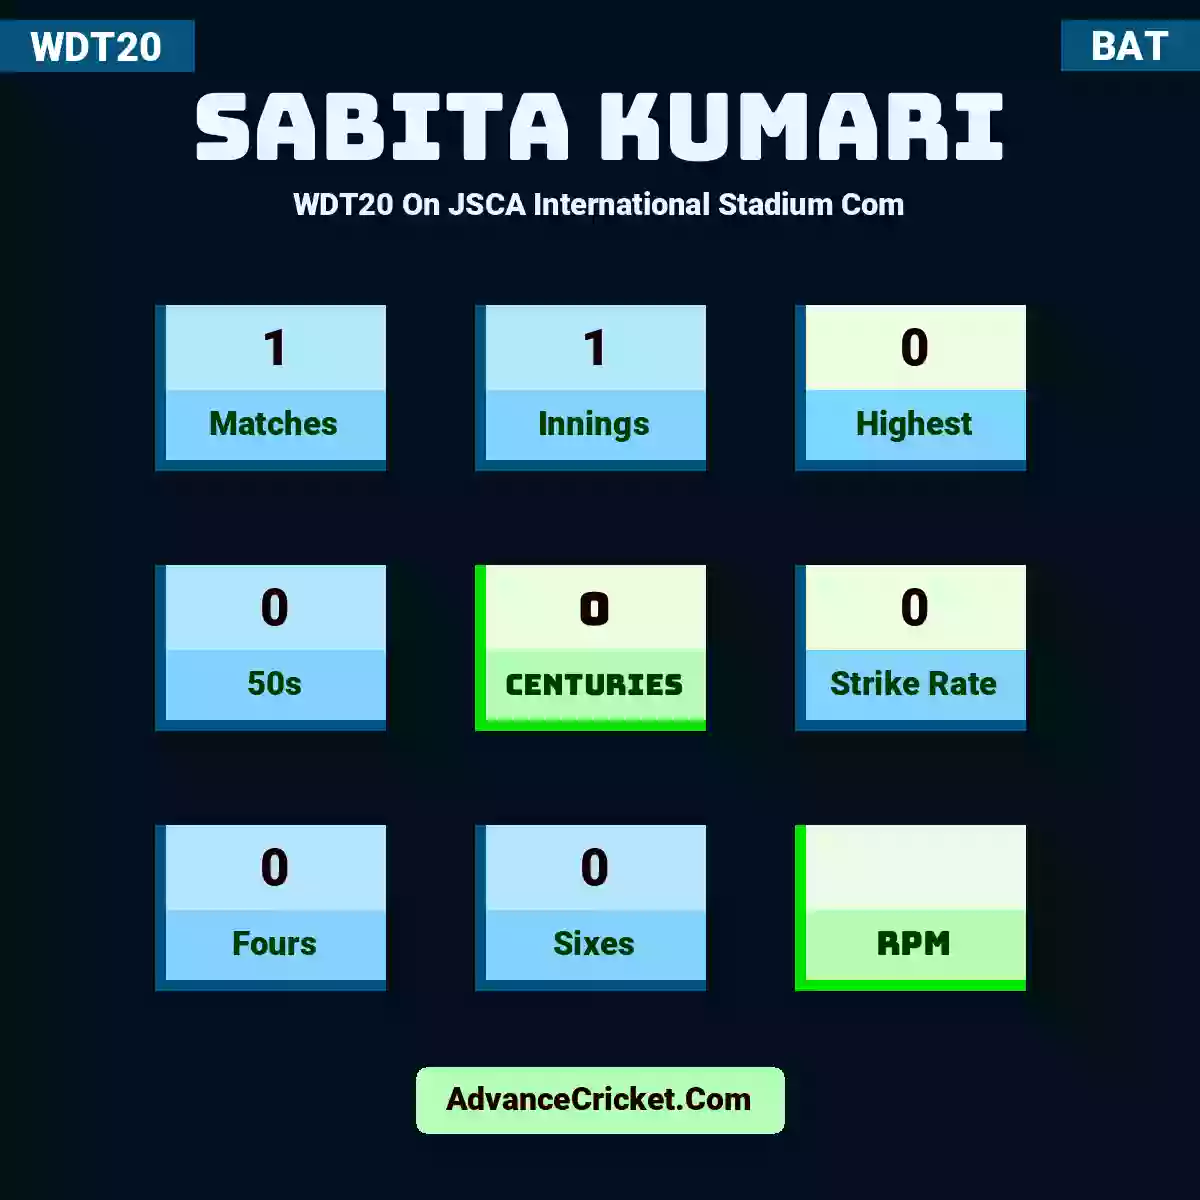 Sabita Kumari WDT20  On JSCA International Stadium Com, Sabita Kumari played 1 matches, scored 0 runs as highest, 0 half-centuries, and 0 centuries, with a strike rate of 0. S.Kumari hit 0 fours and 0 sixes.